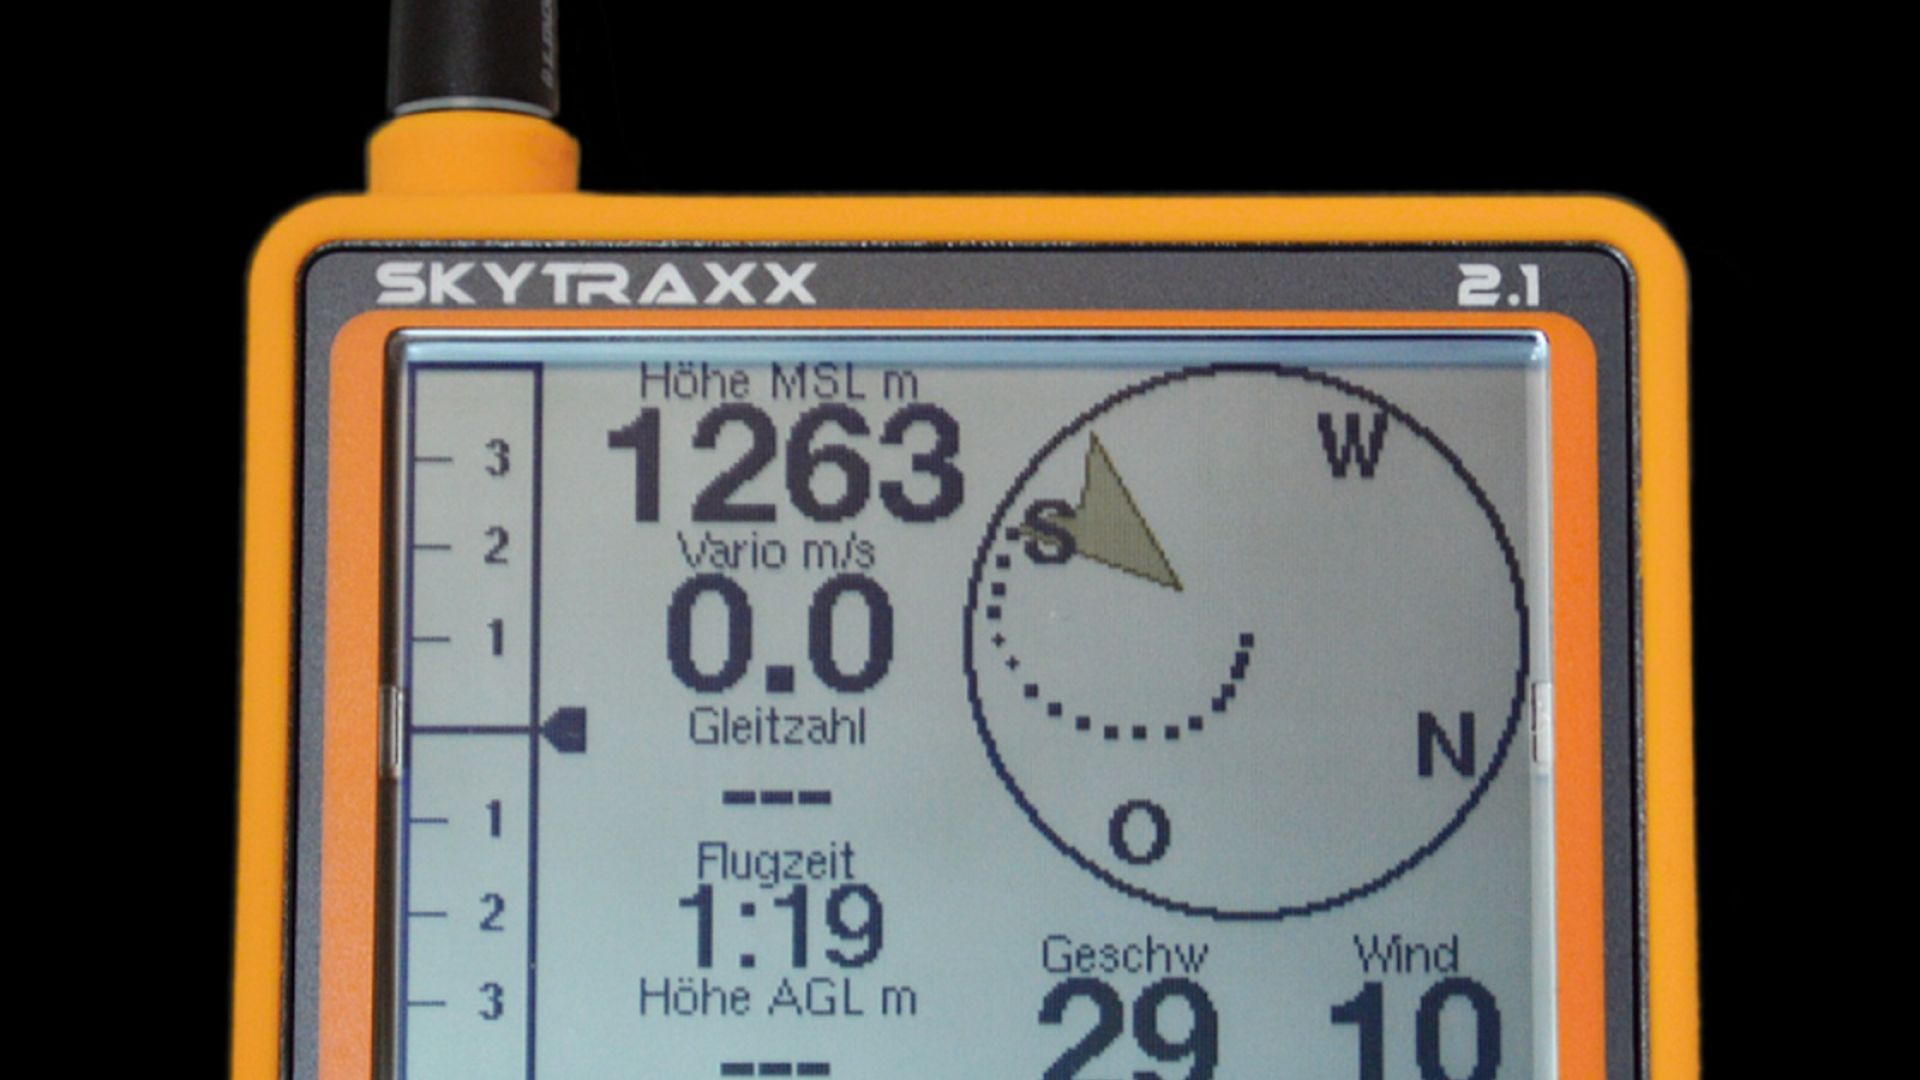 Skytraxx 2.1